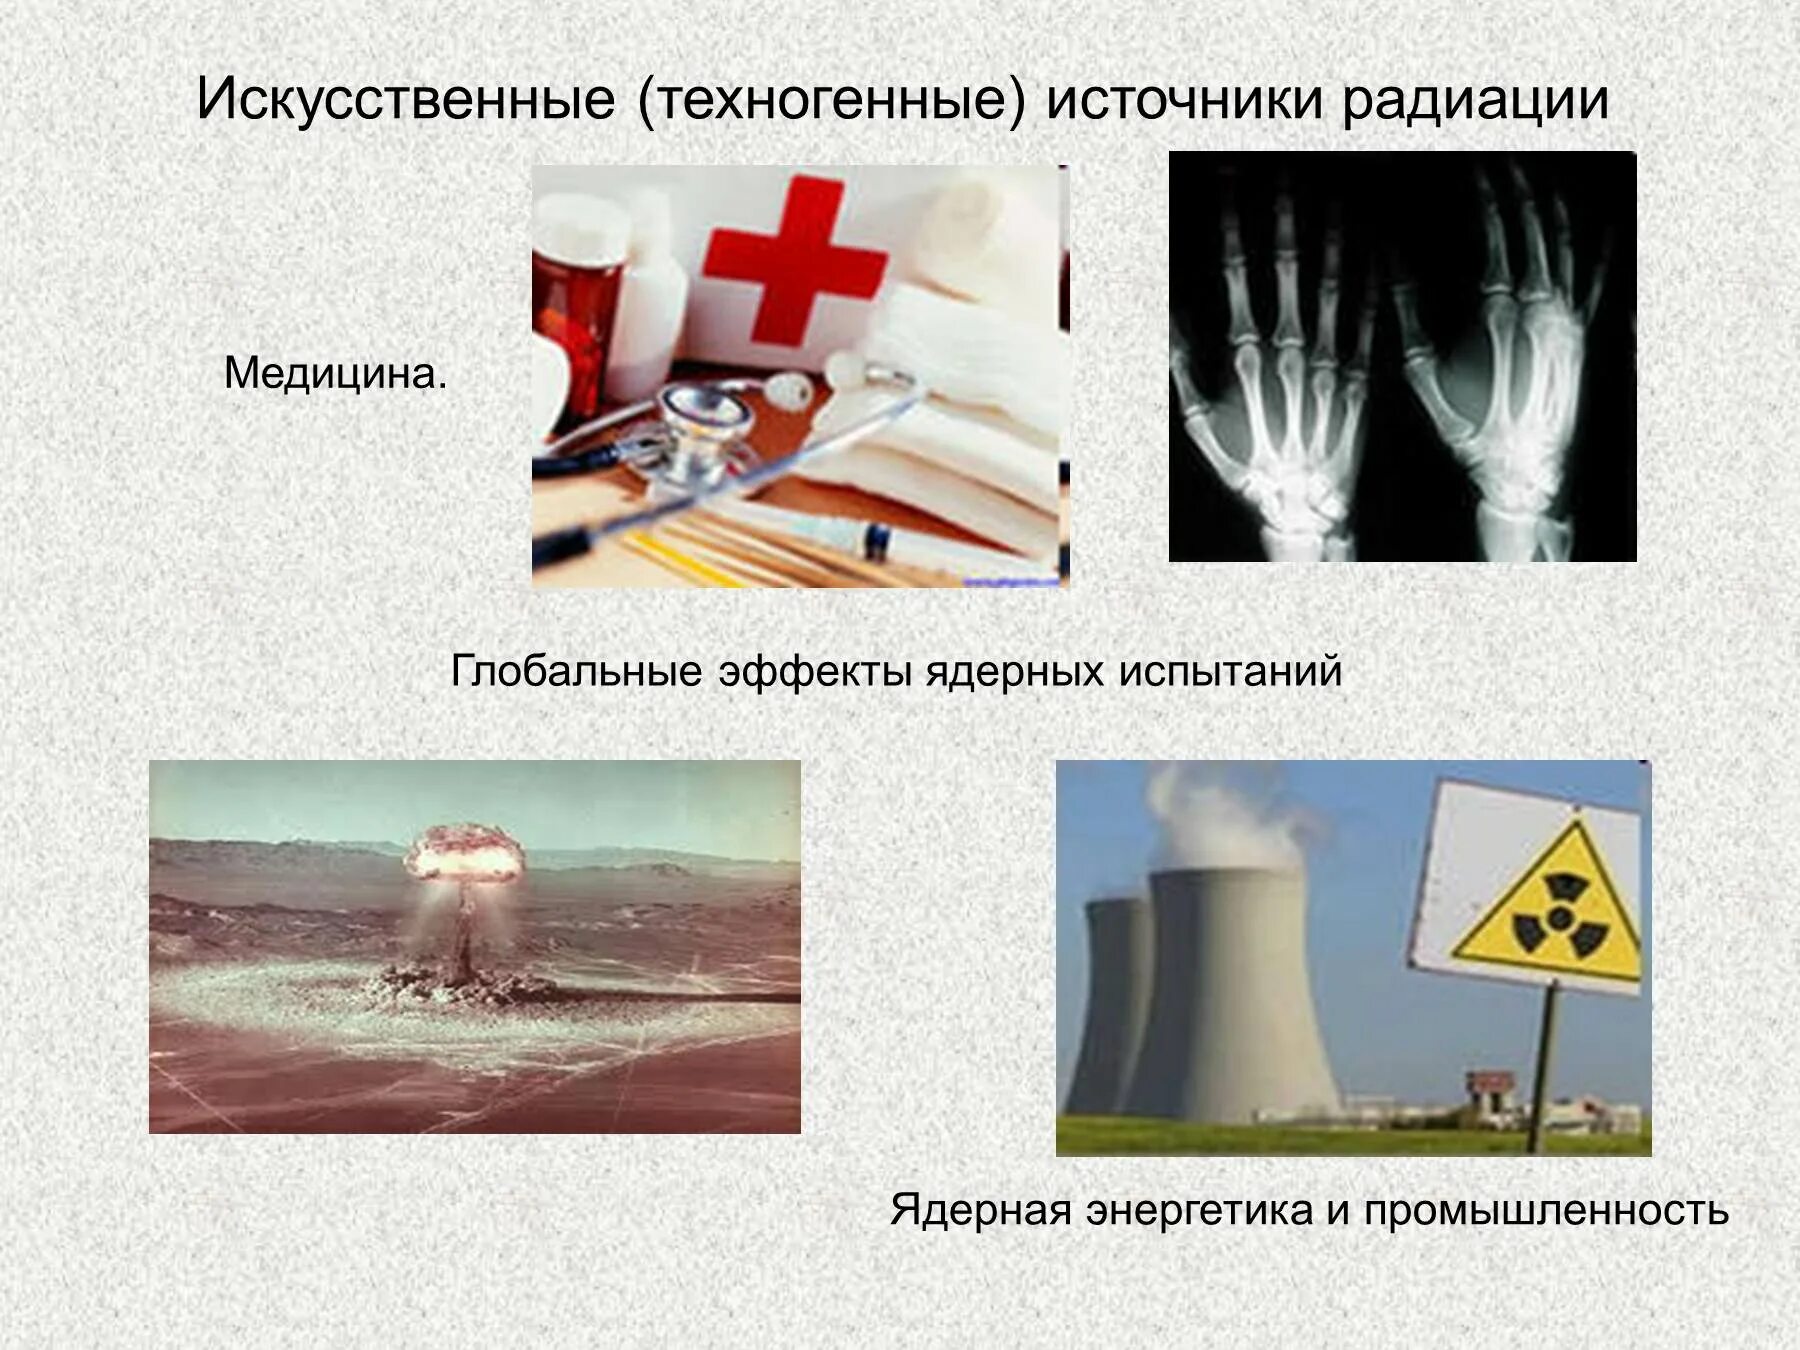 Применение радиации в медицине. Искусственные источники излучения. Искусственные источники излучения радиации. Источники радиации ОБЖ. Техногенные источники радиации.